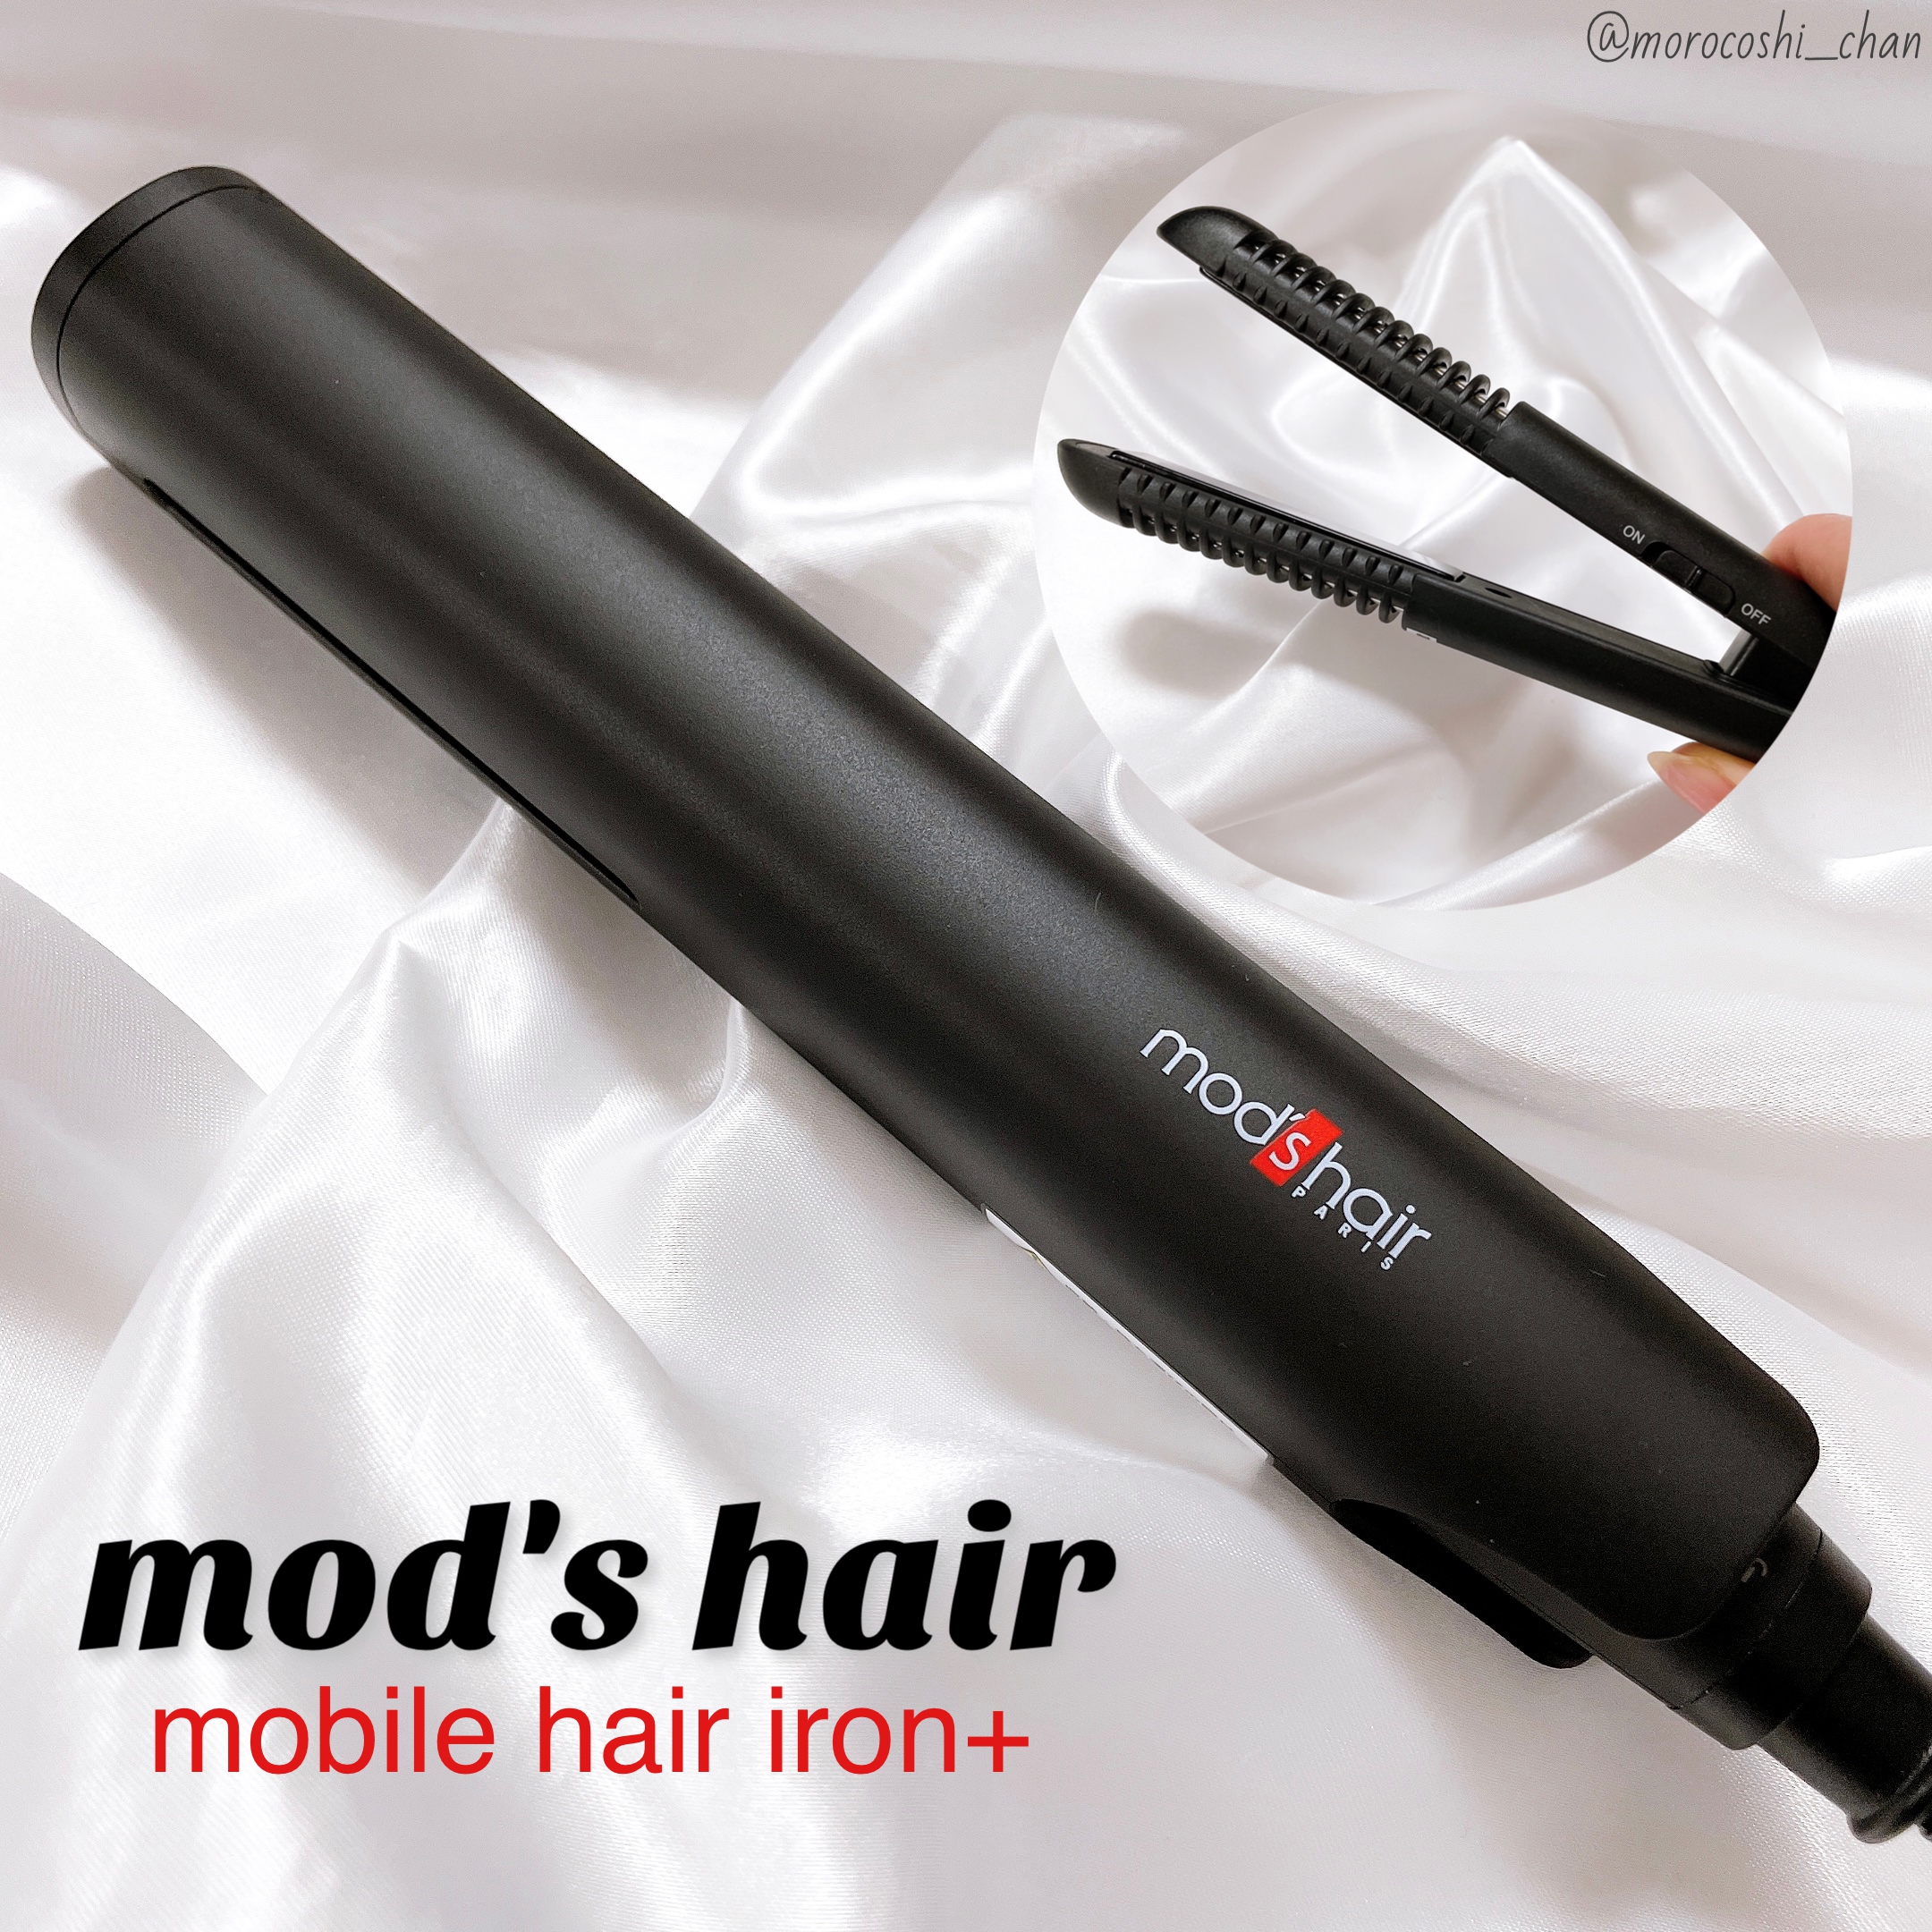 mod’s hair(モッズ・ヘア) スタイリッシュ モバイルヘアアイロンプラス MHS-1240の良い点・メリットに関するもろこしちゃん🌽さんの口コミ画像1